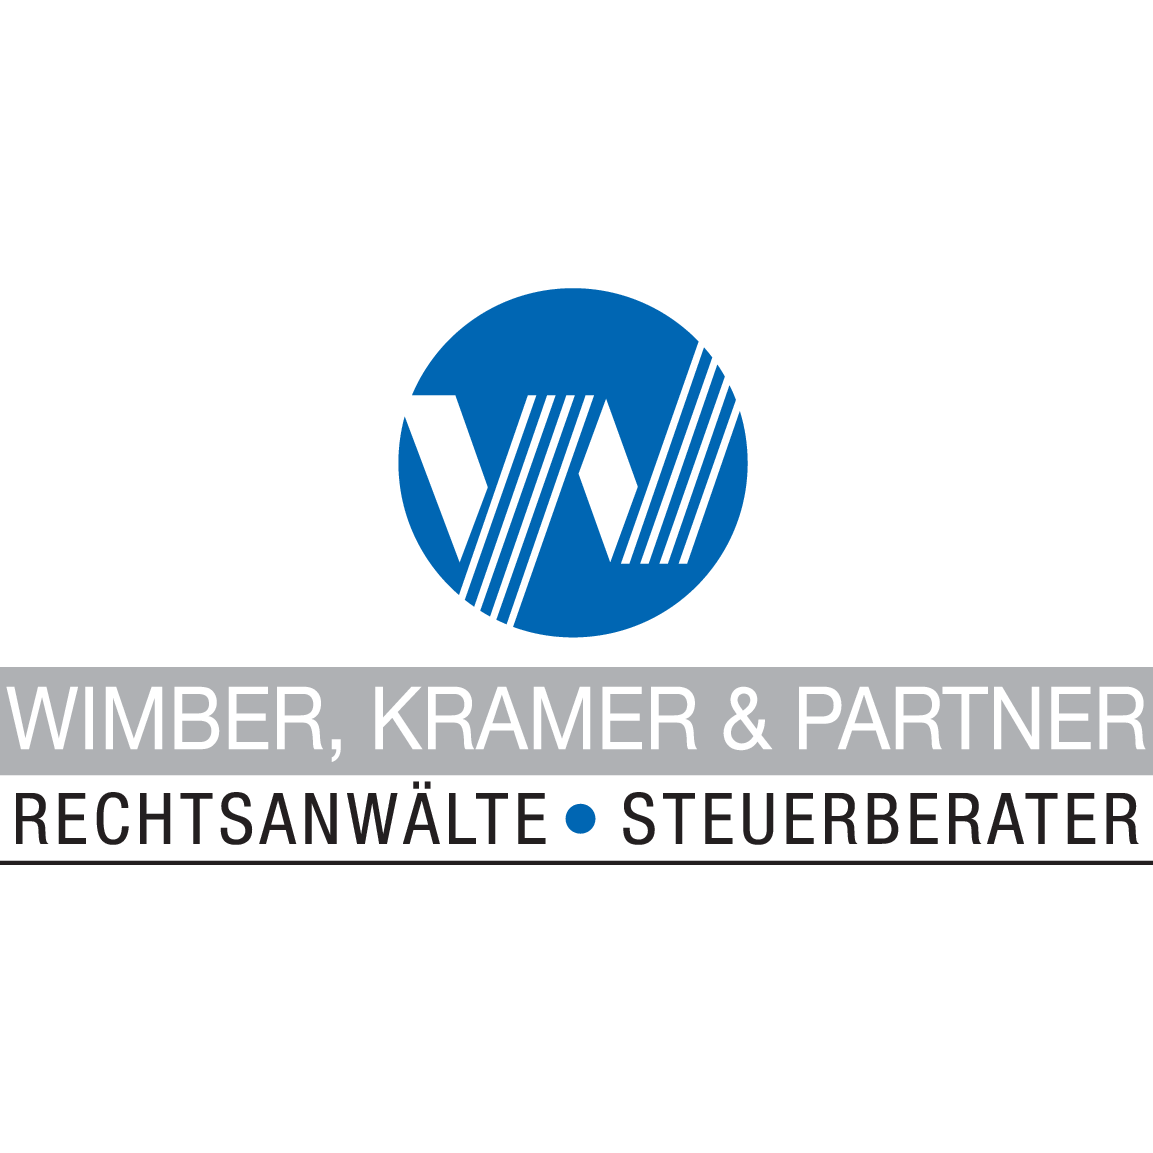 Mike Kramer in Großwallstadt - Logo